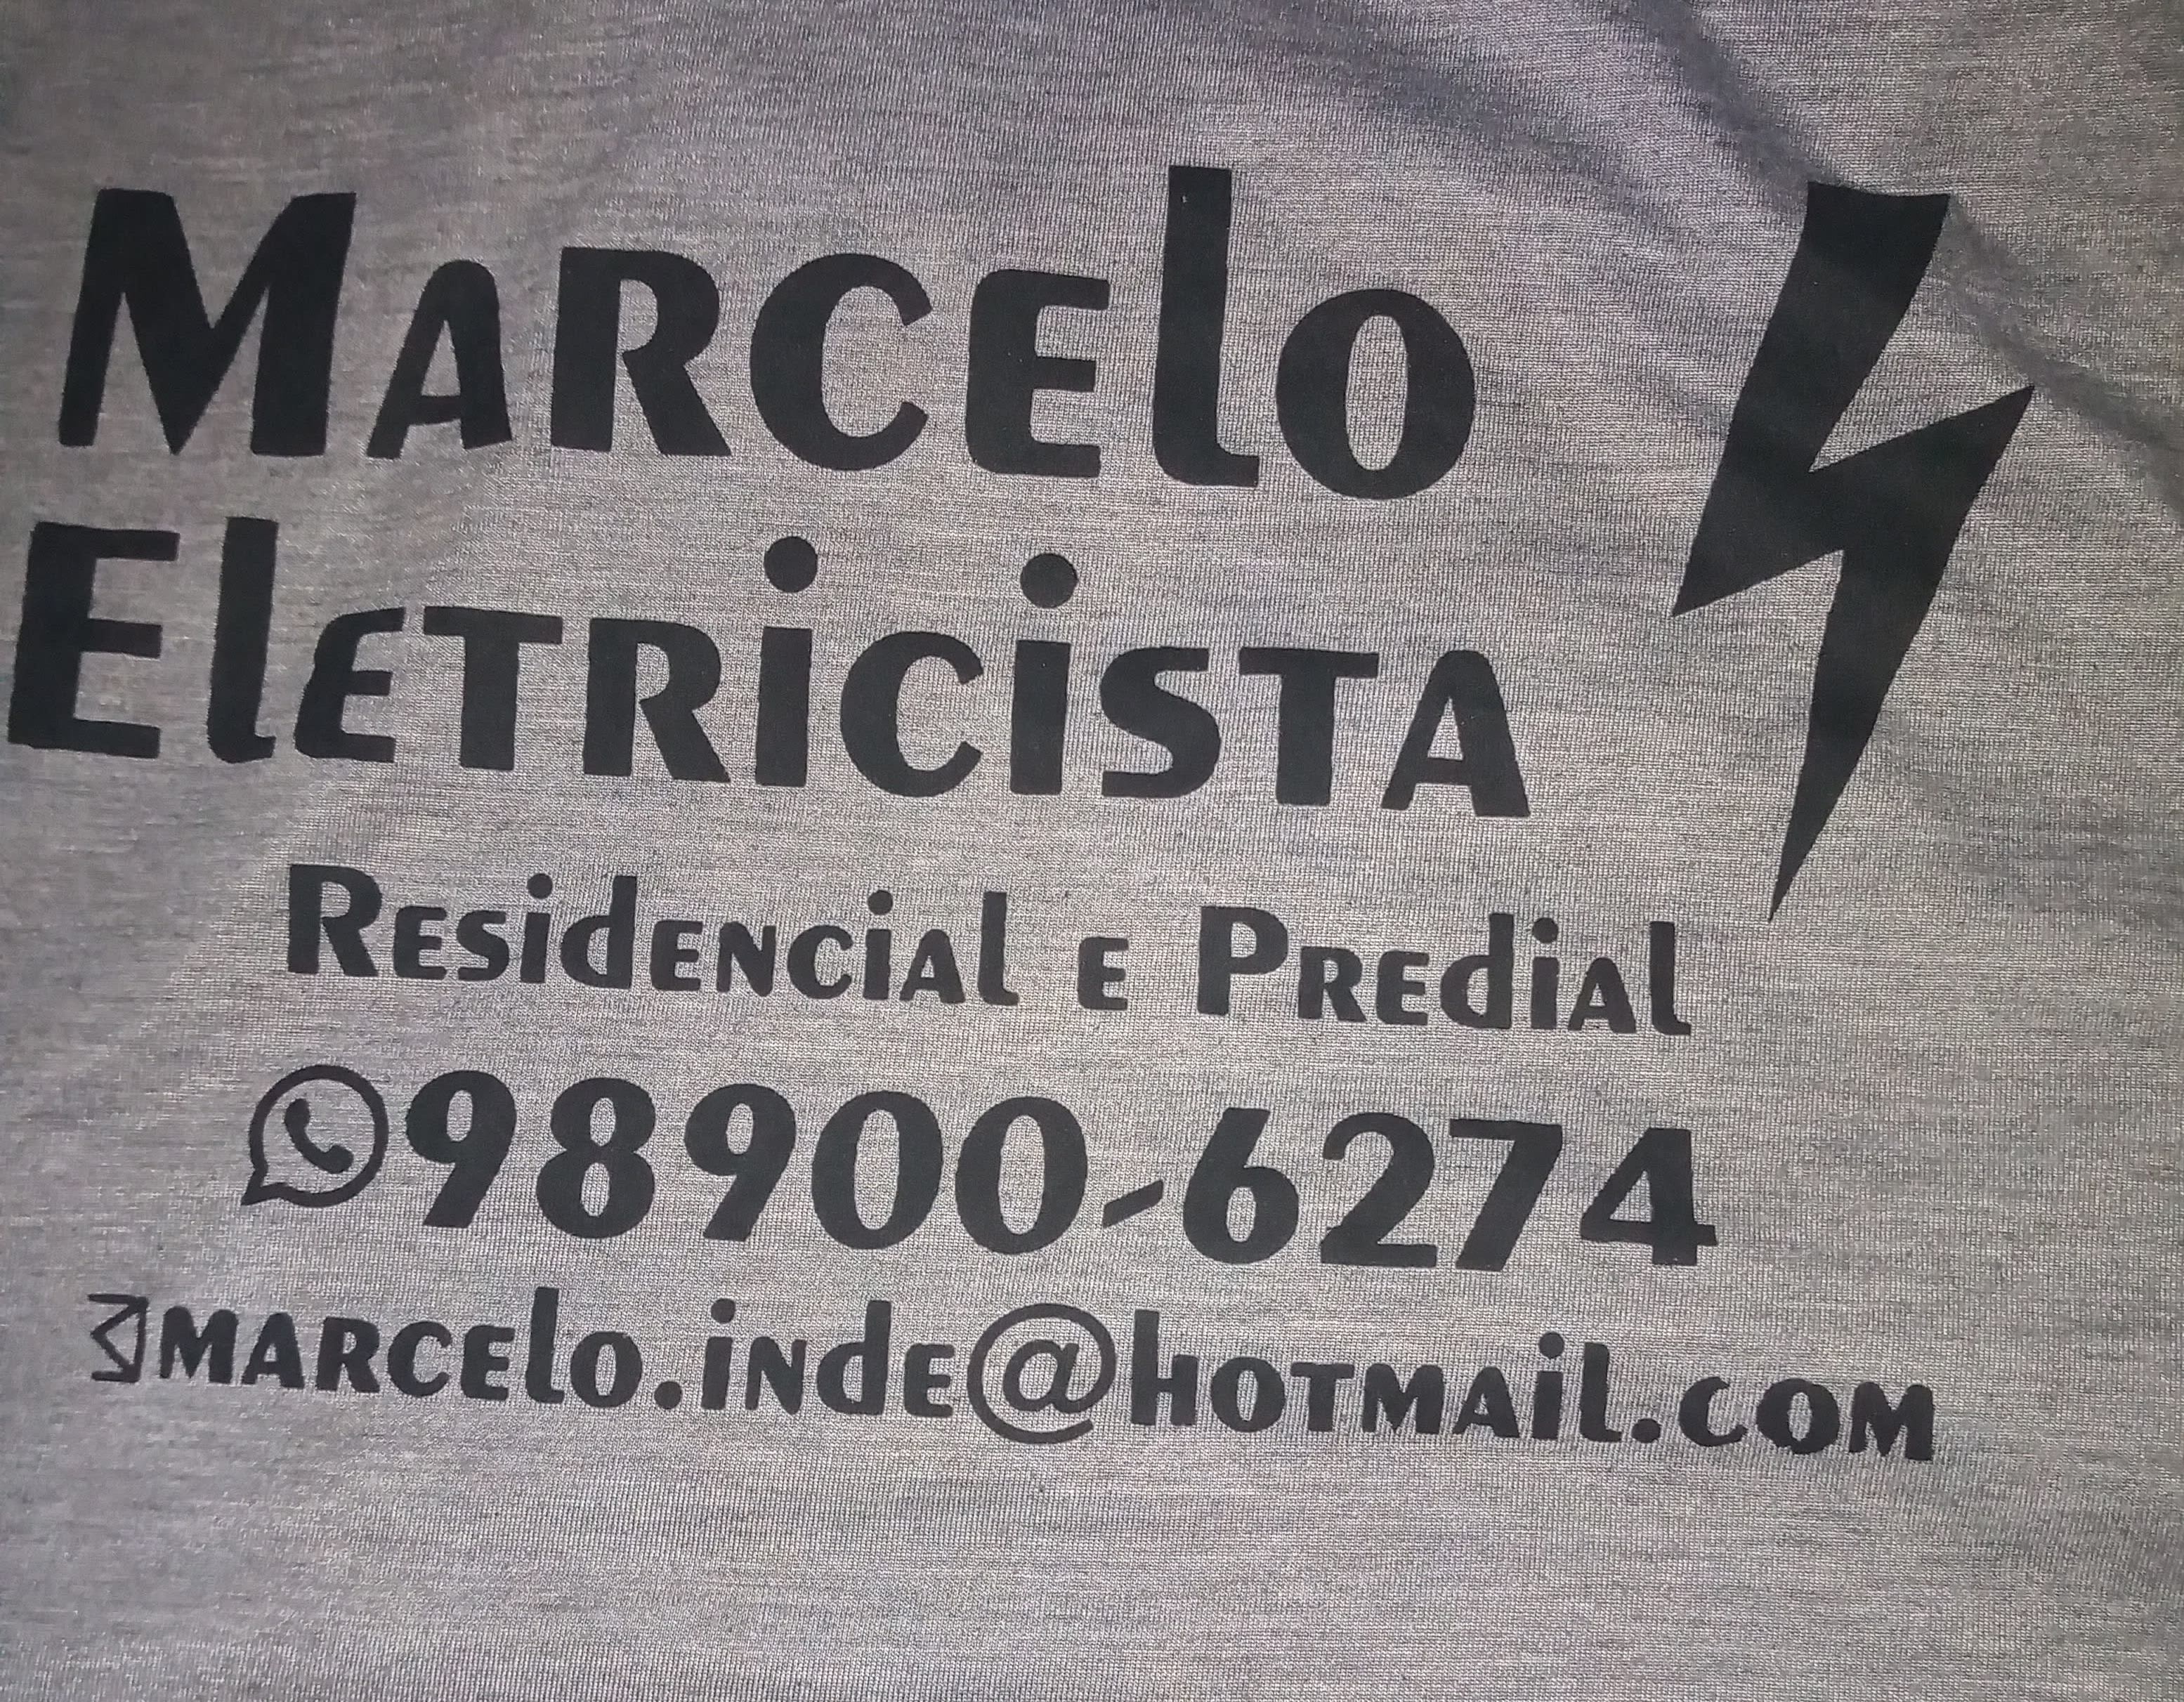 Marcelo Eletricista